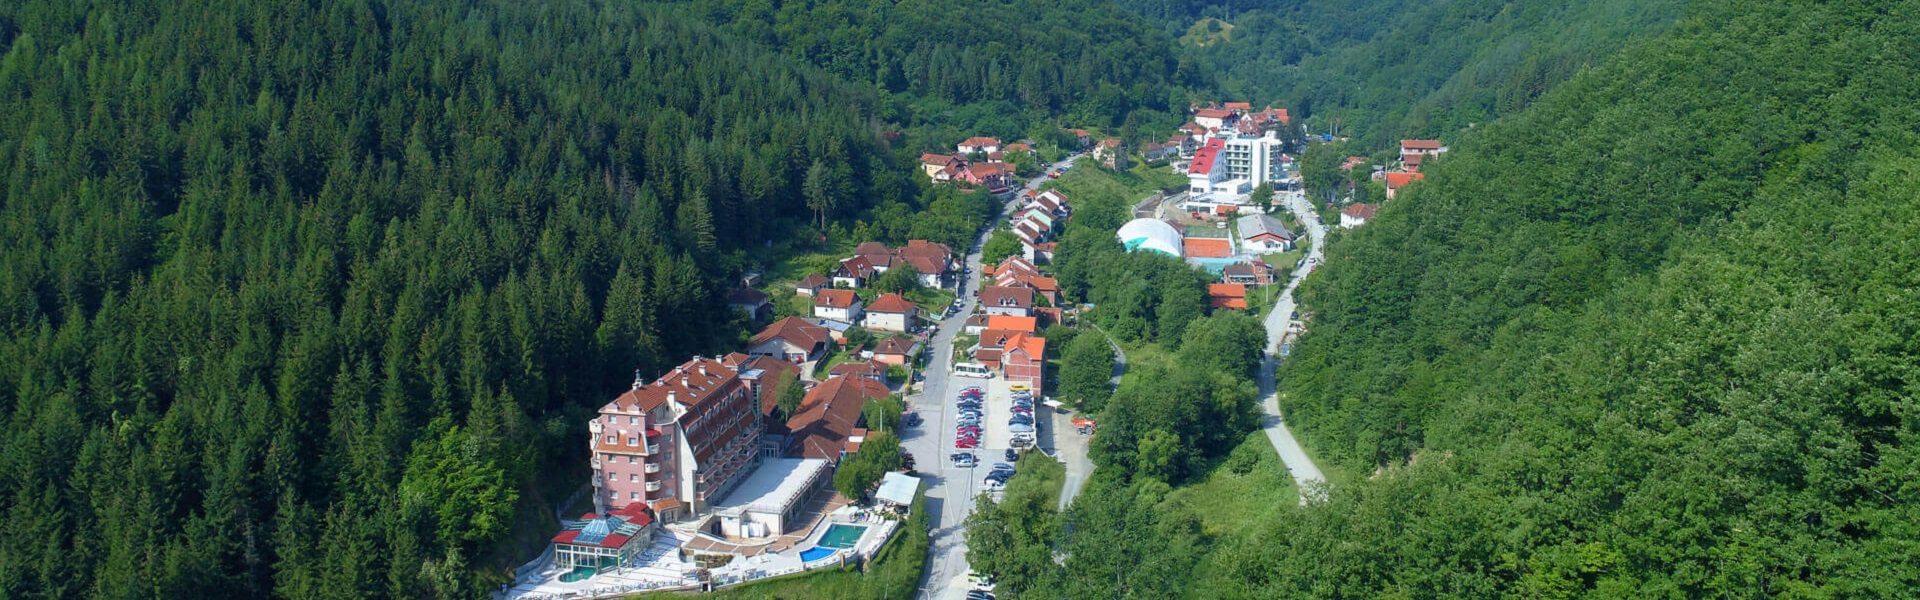 Rent a car Sarajevo |  Lukovska banja u Srbiji